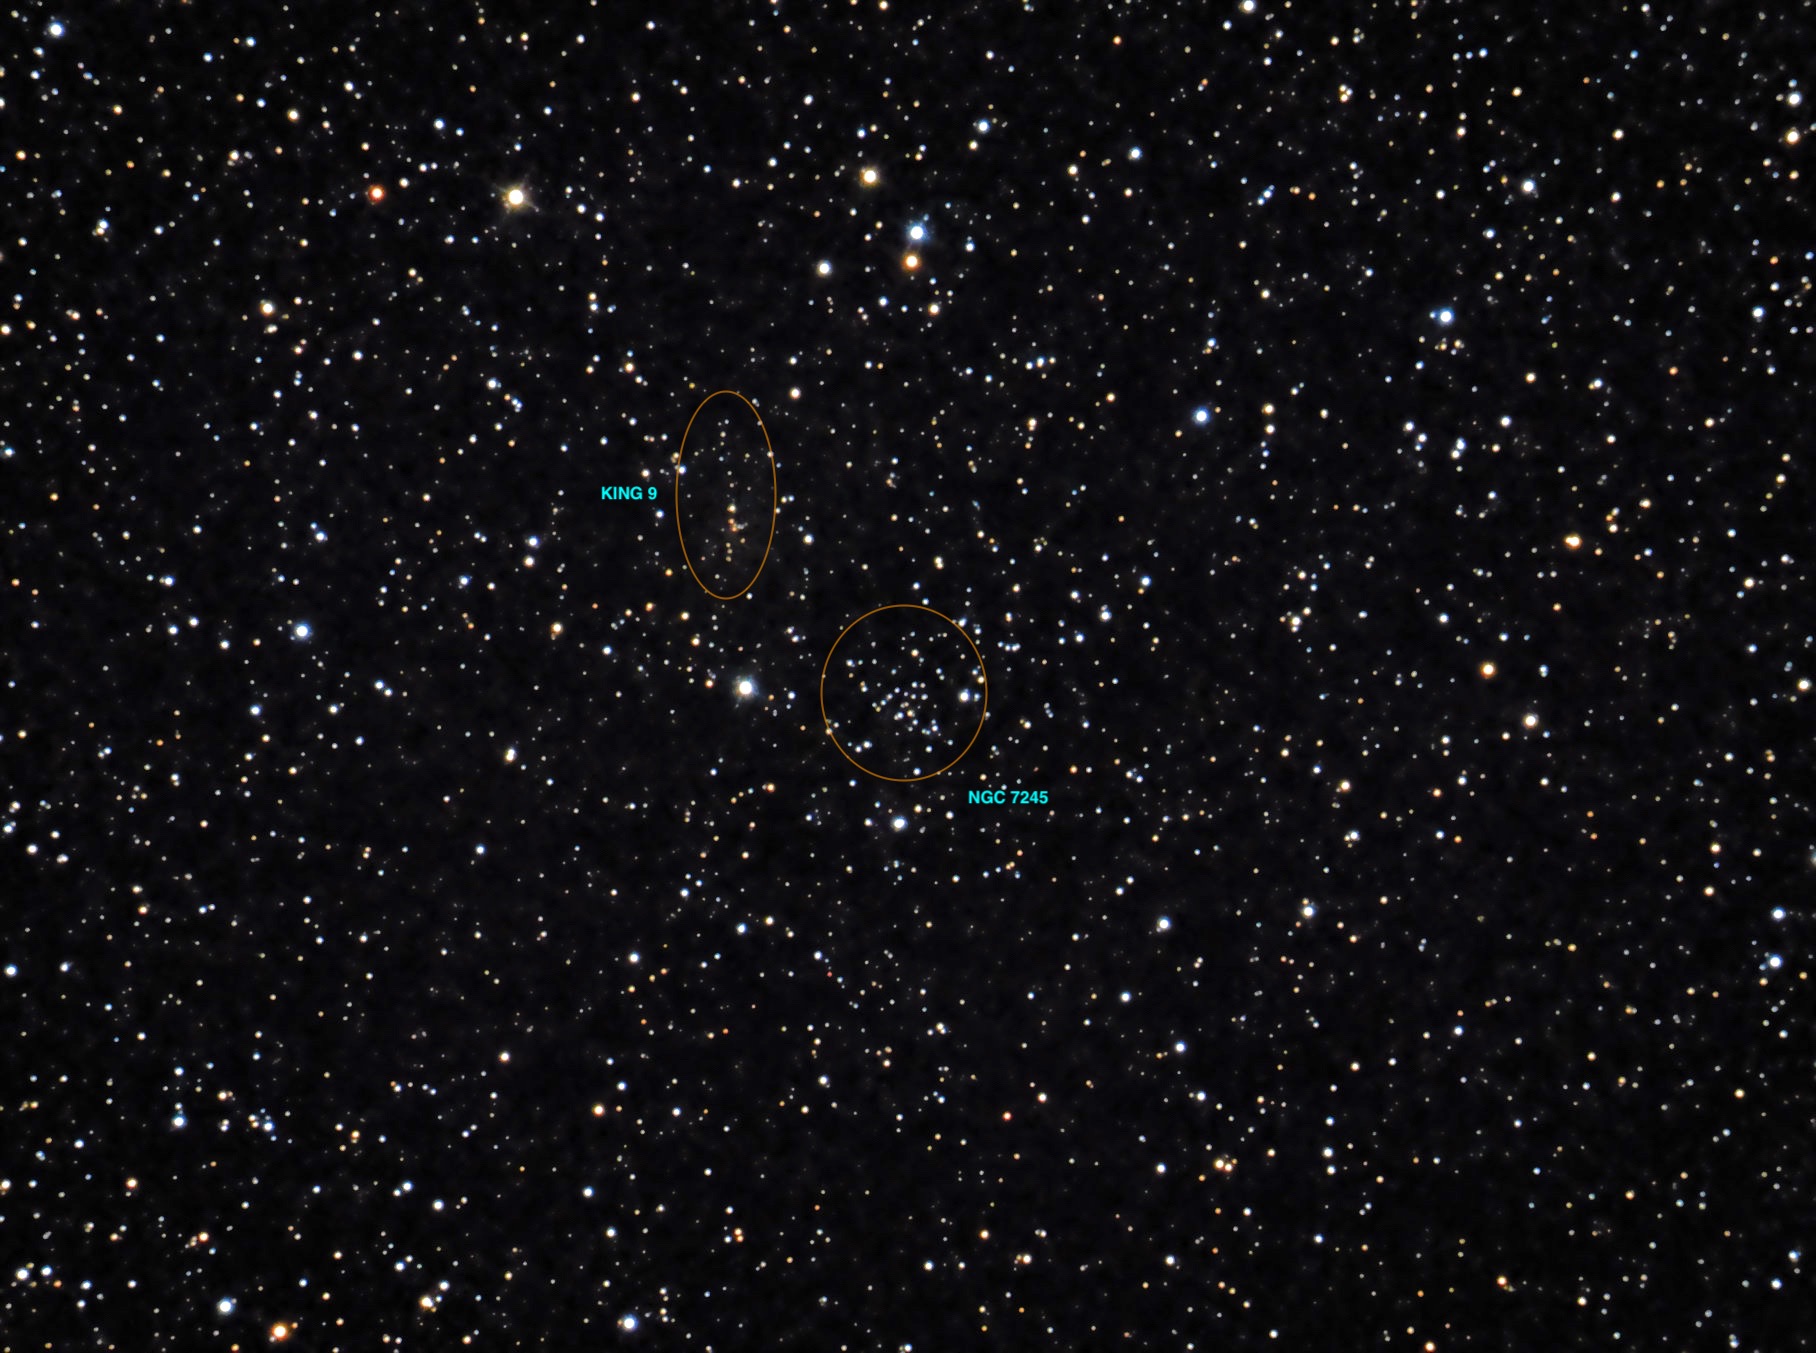 NGC 7245 OC CEA LACERTA ST 12X12 A32 M100 W3W S5-4 RC8+IMX294+UVIR.jpg